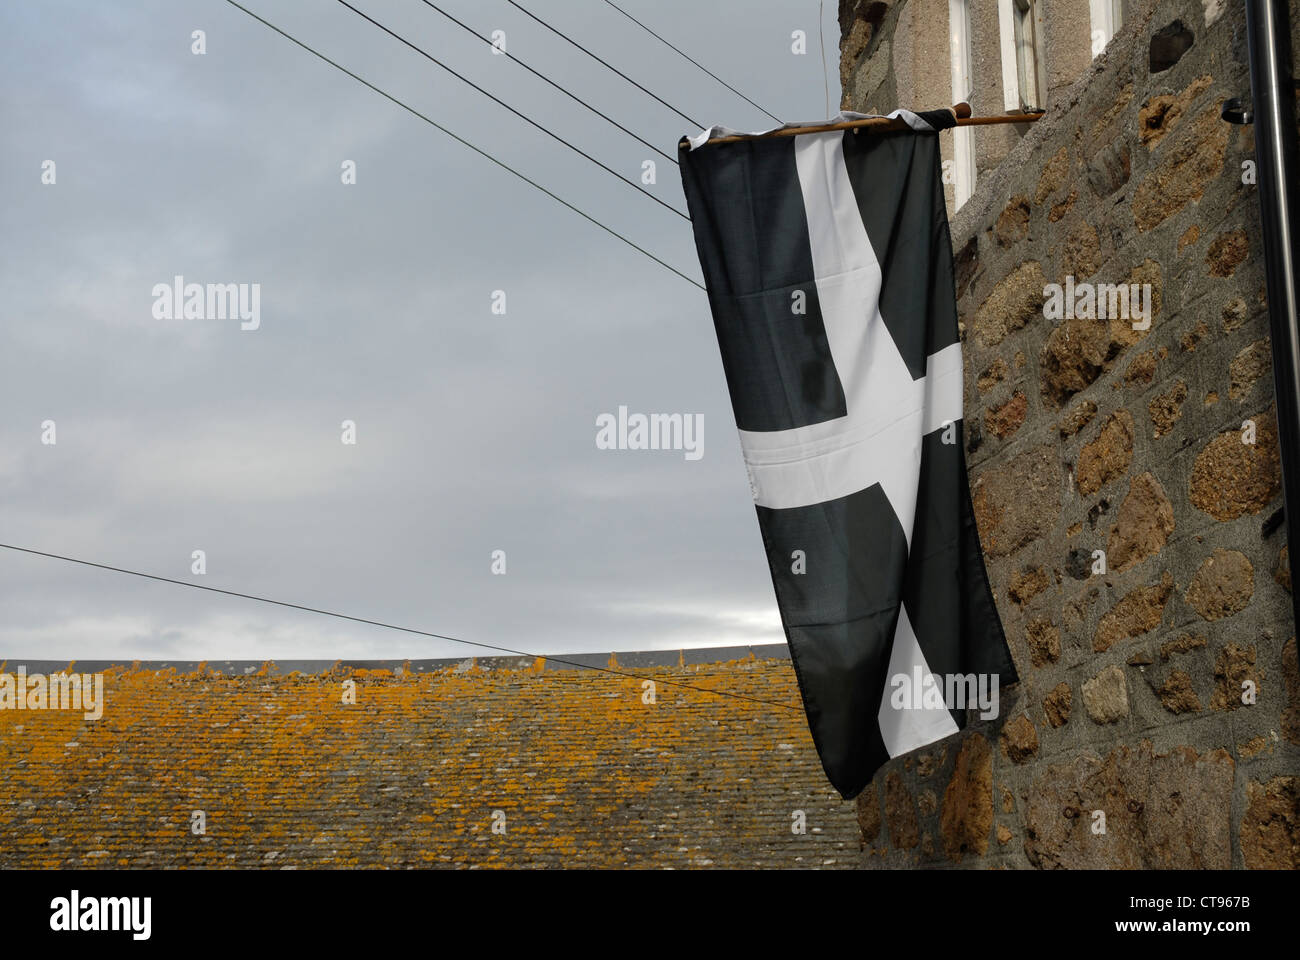 Cornish Flag at the Mousehole, Cornwall, England, UK Stock Photo